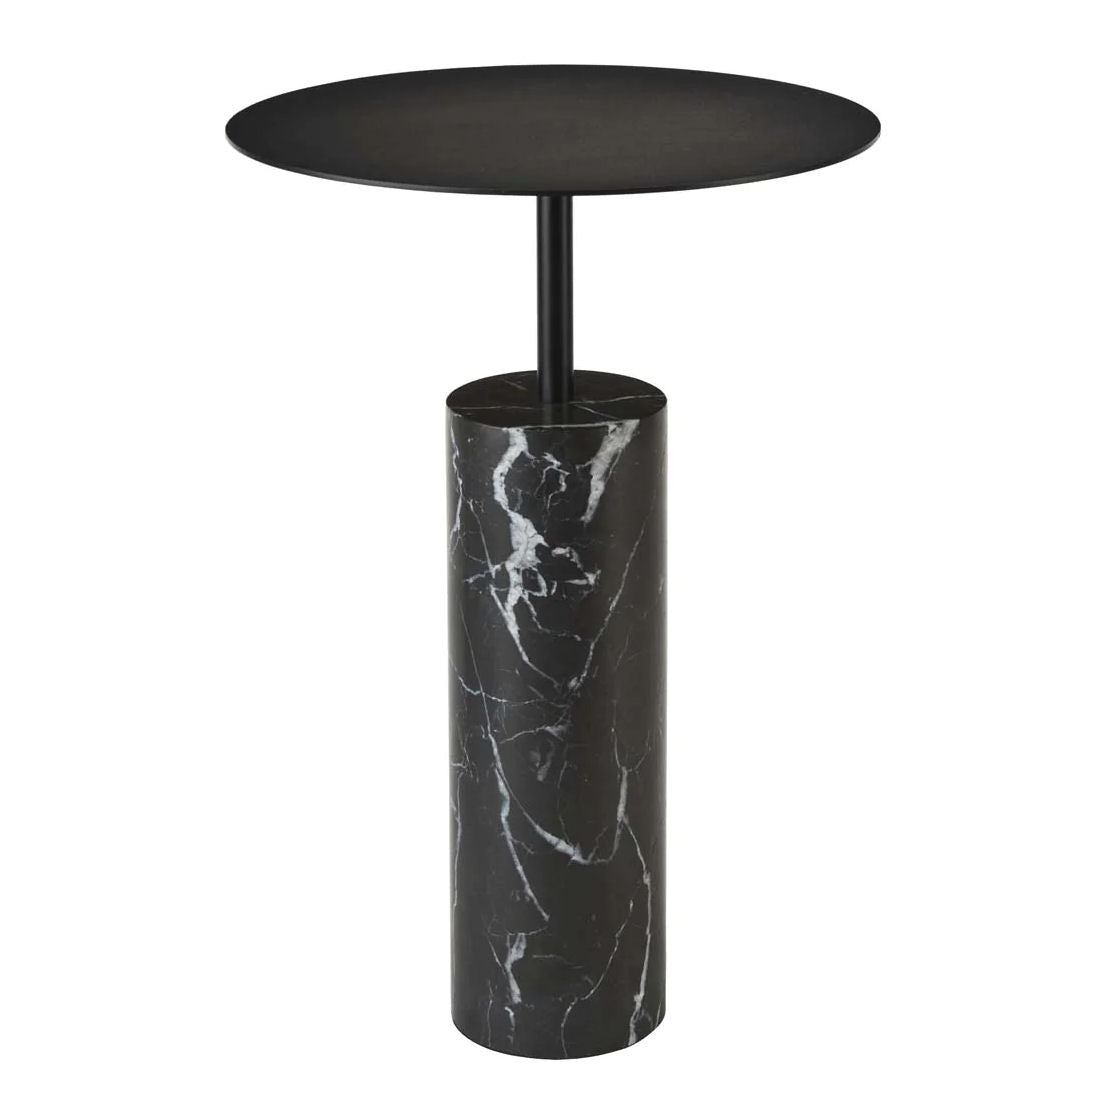 Nero Black Marble Side Table by Aquanova - |VESIMI Design|